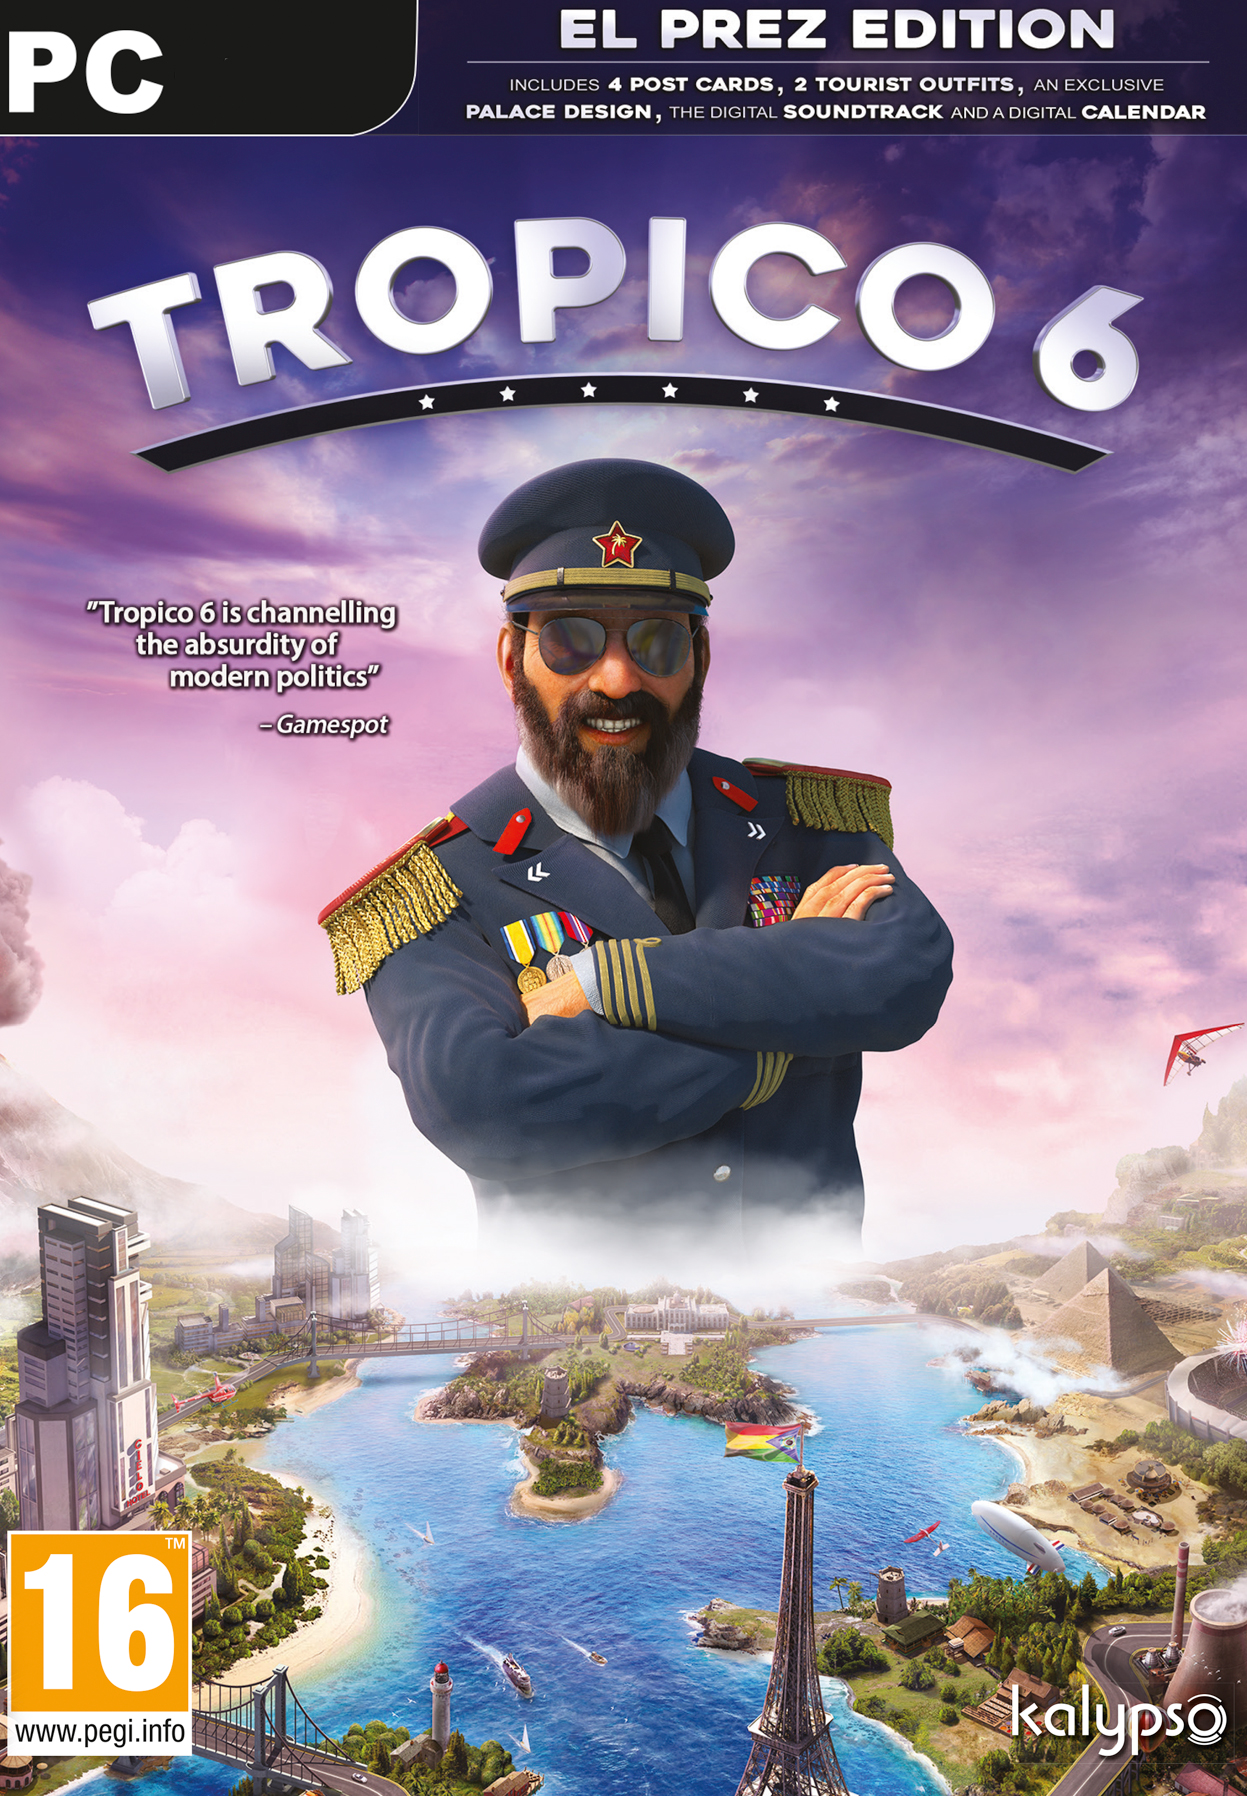 Tropico 6 El Prez Edition